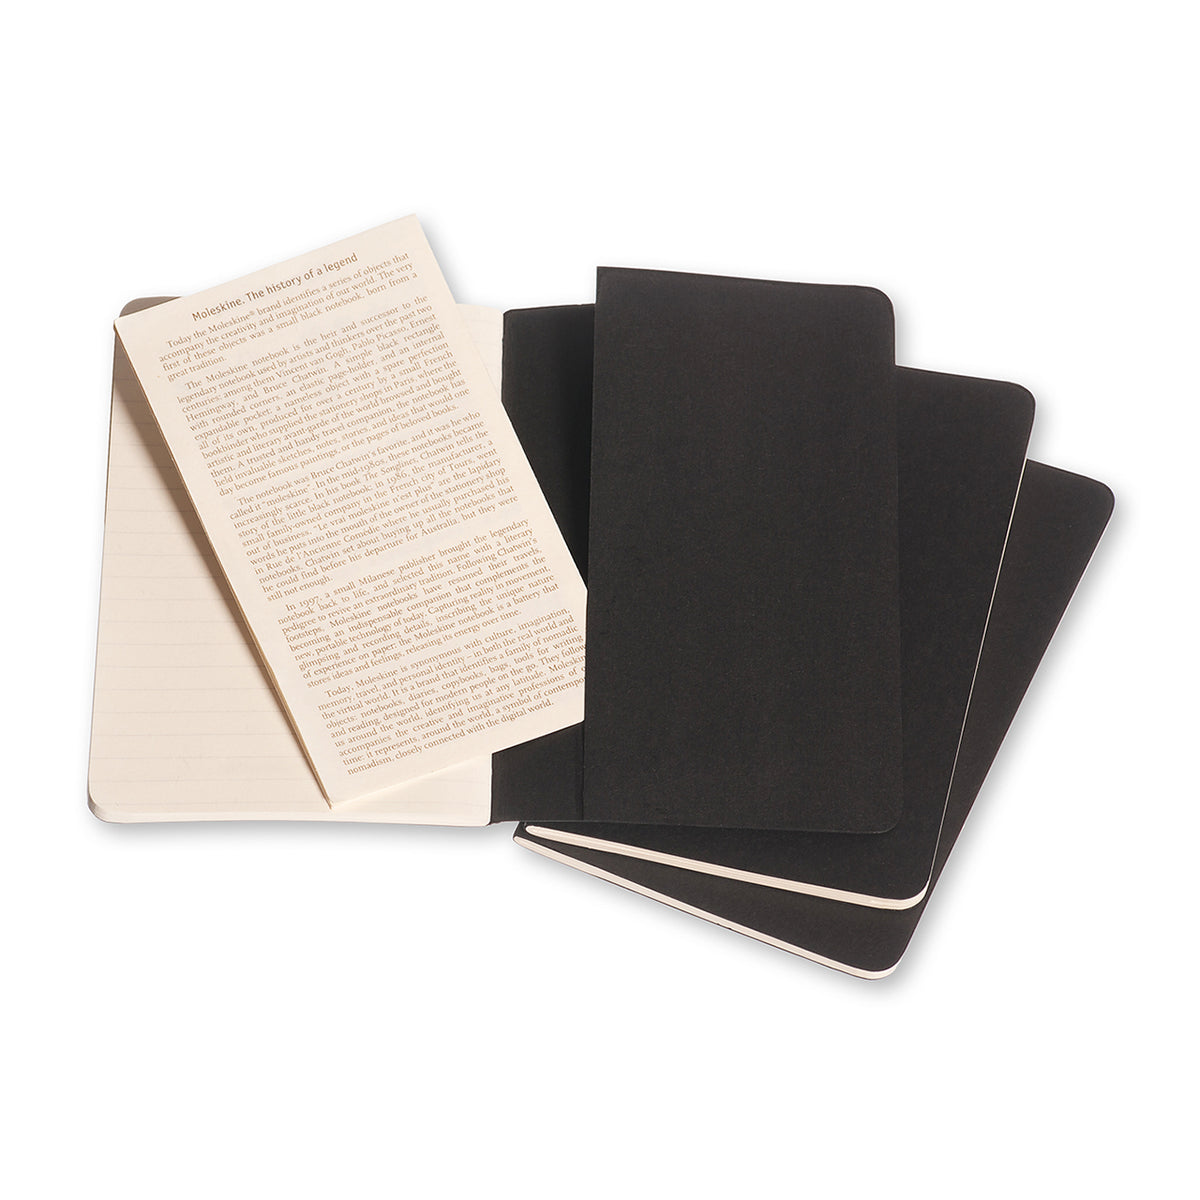 Moleskine - Cahier Notebook - Set of 3 - Ruled - Pocket - Black